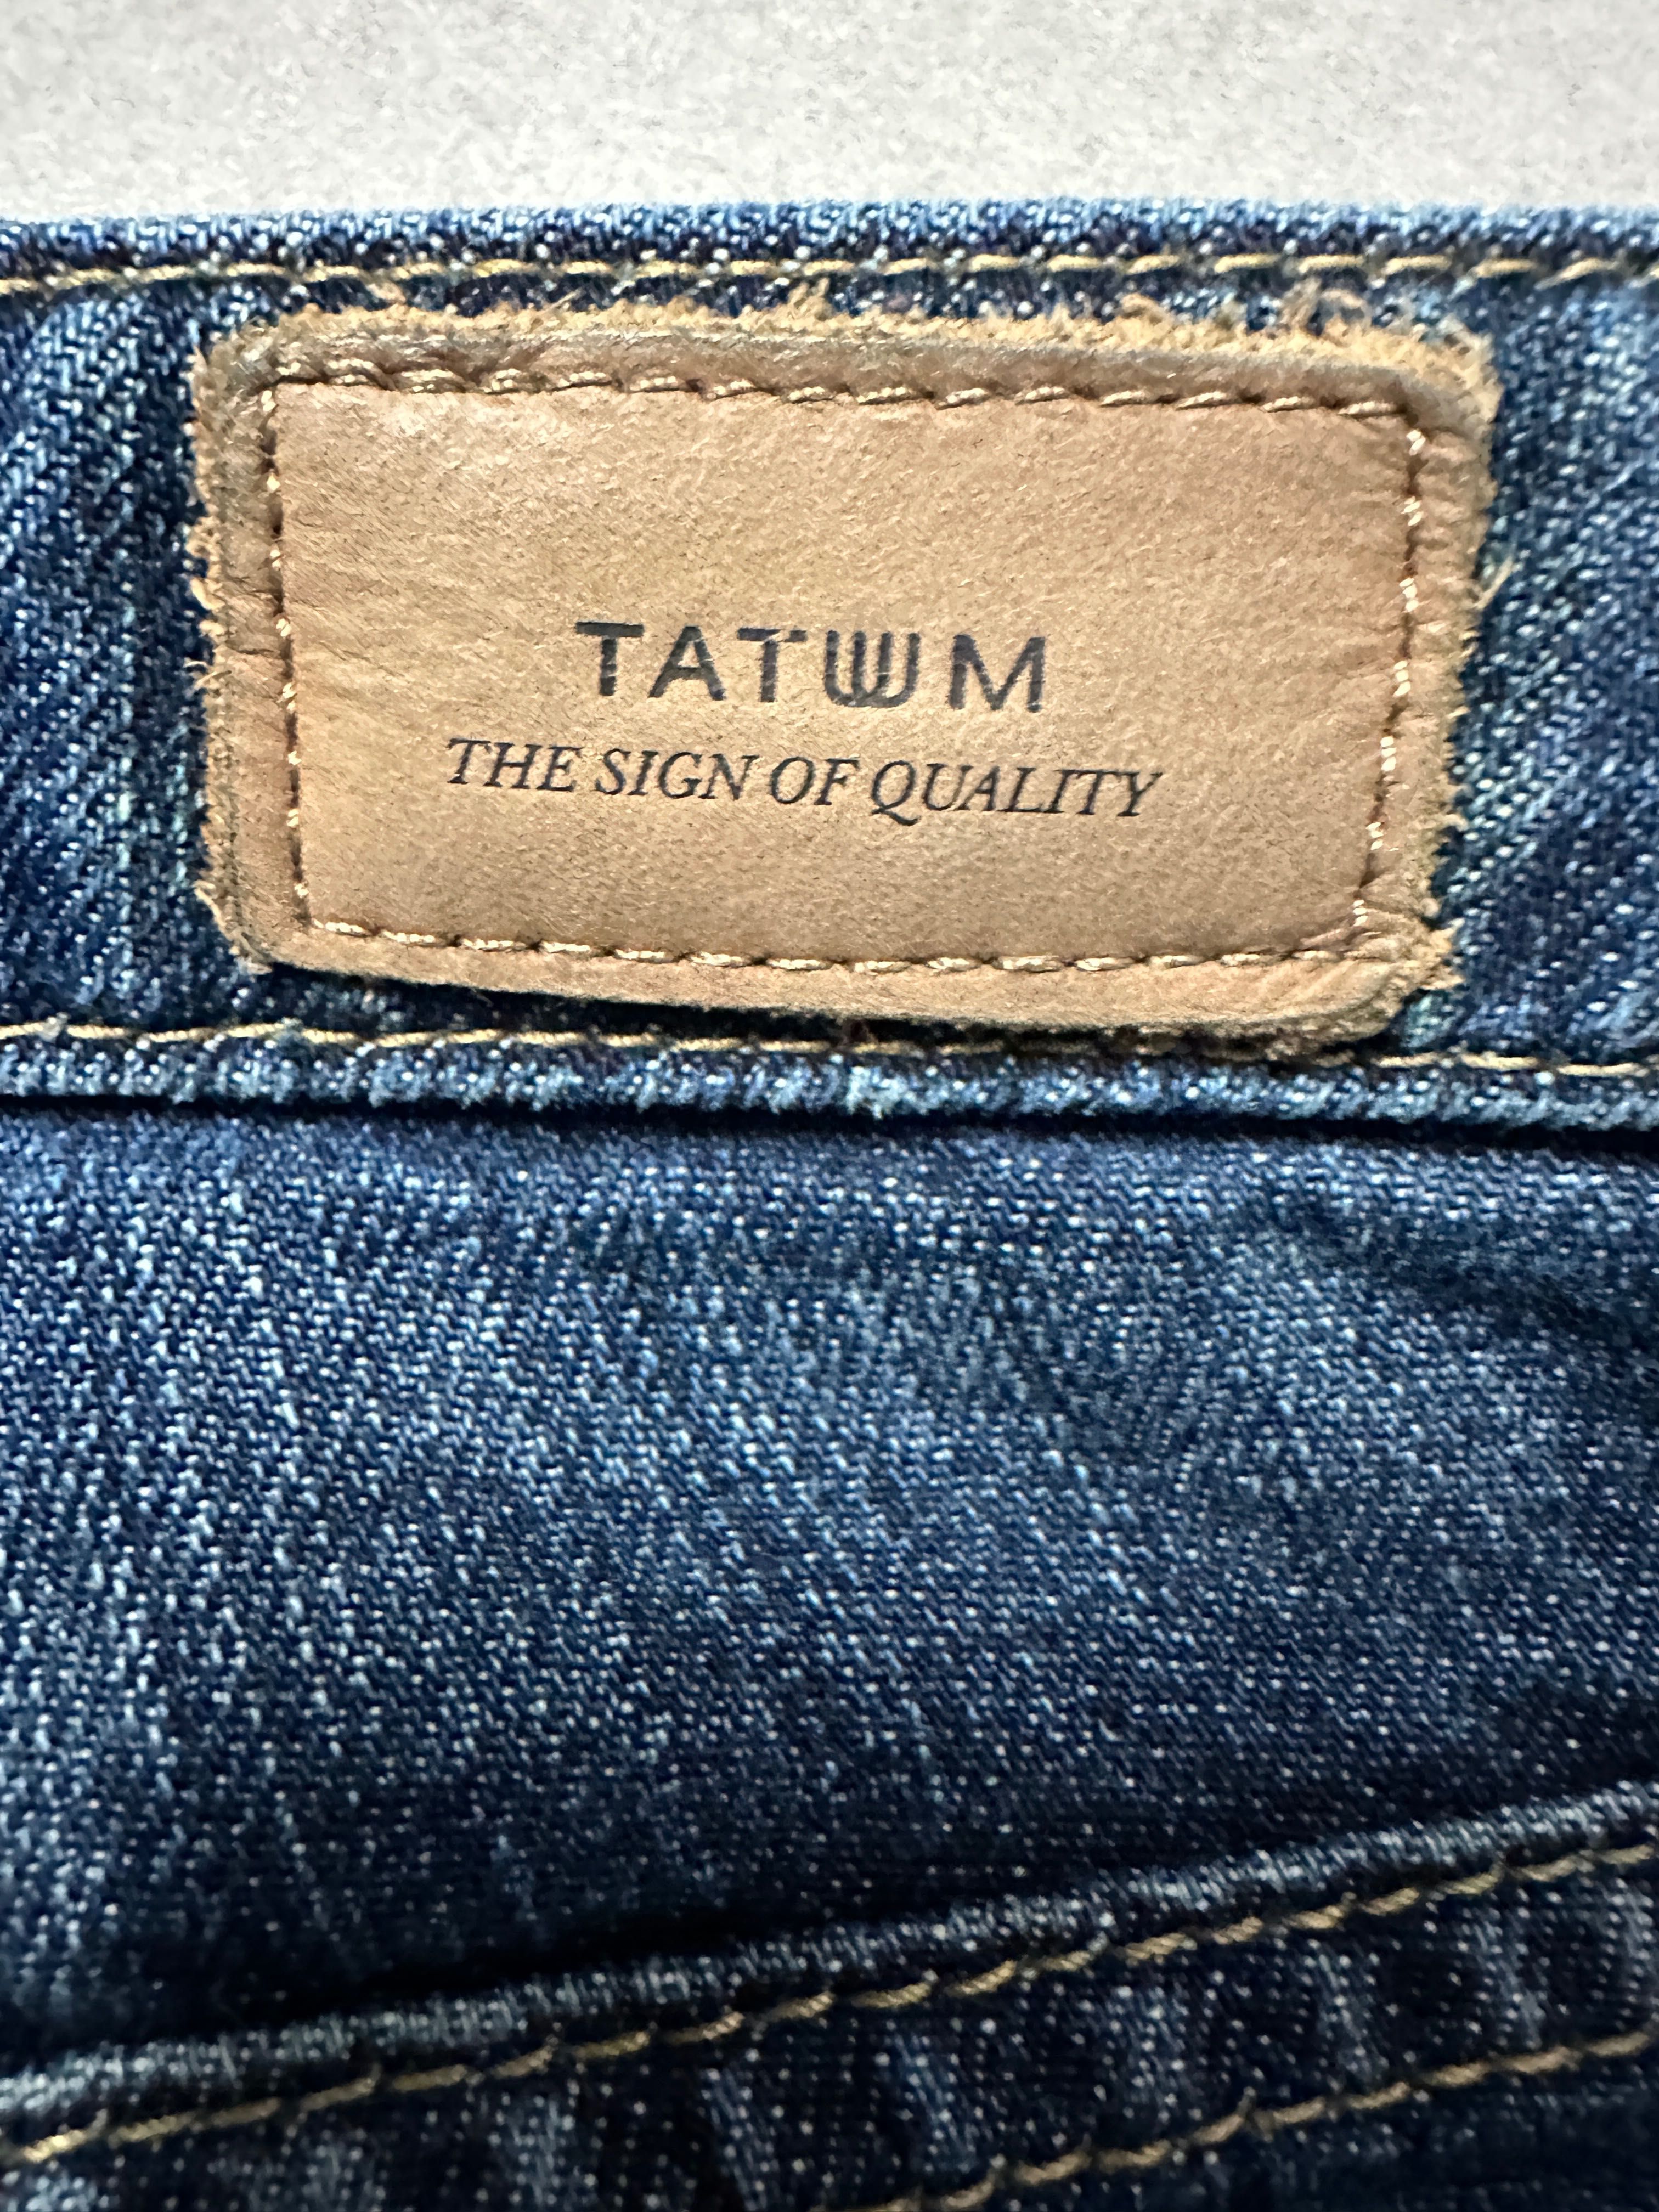 Spodnie jeans damskie. Tatuum